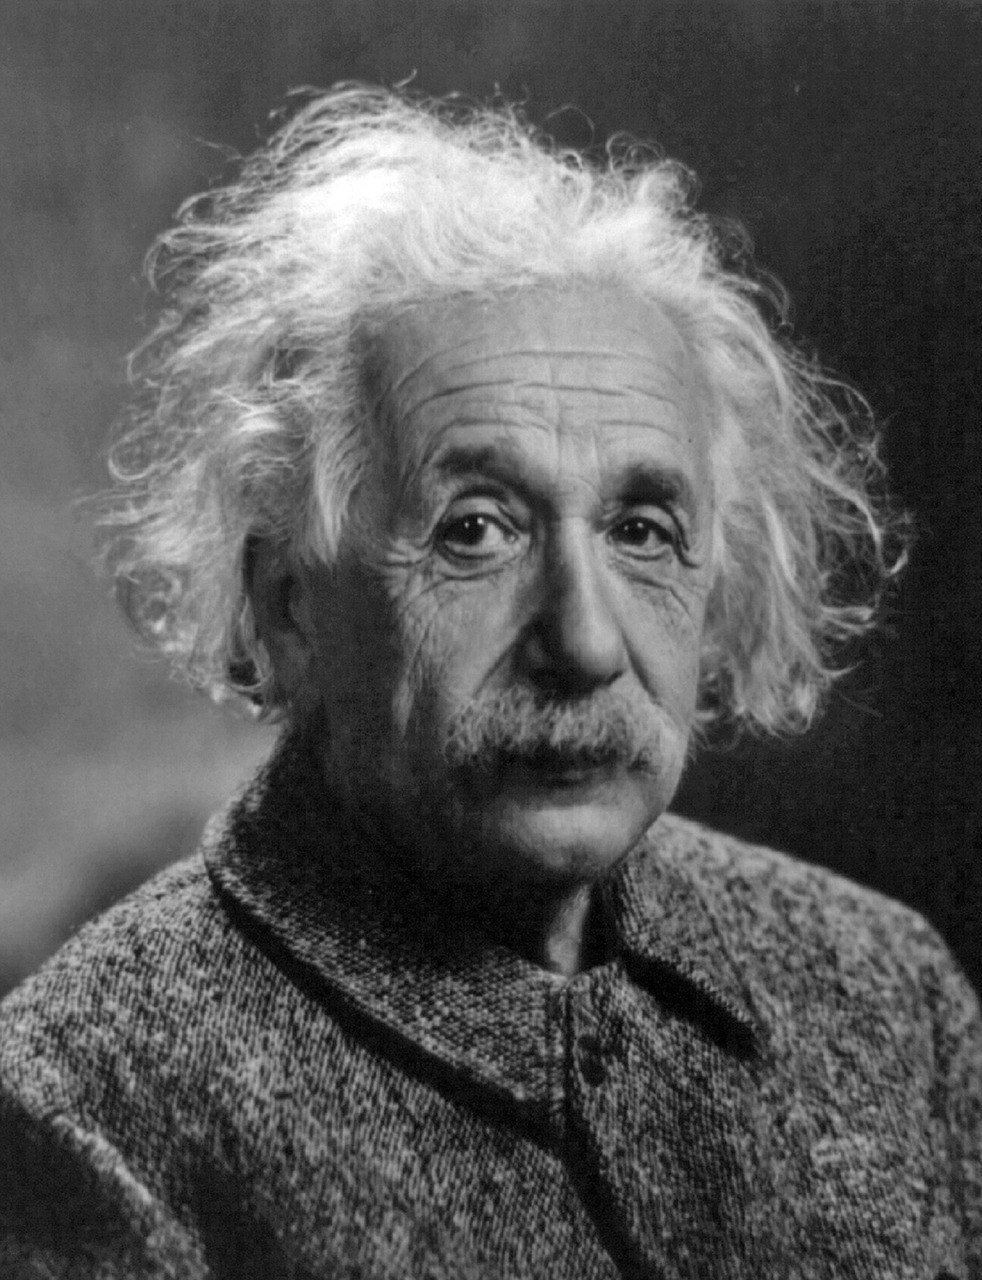 阿尔伯特、·、爱因斯坦、男子、物理学家 - 免费可商用图片 - cc0.cn